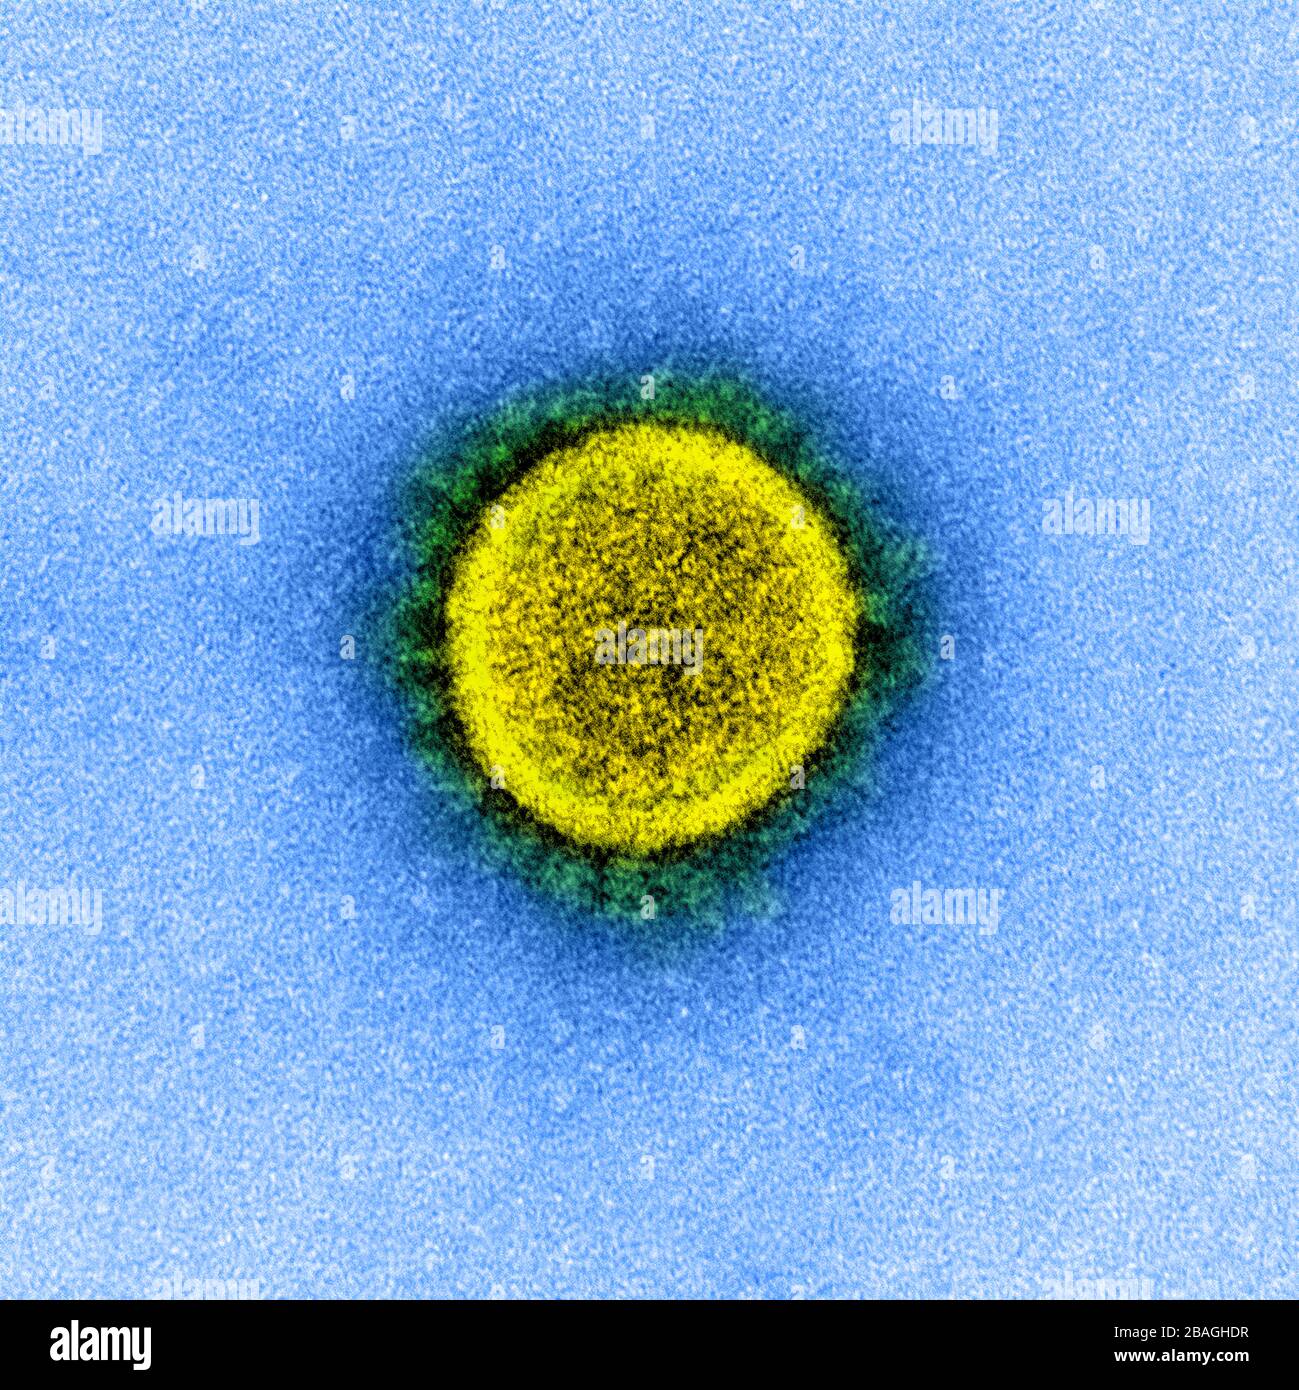 Micrográfico de electrones de transmisión de una partícula de virus de CoV-2 de SARS, aislada de un paciente. Imagen capturada y mejorada en color en la instalación integrada de Investigación NIAID (IRF) en Fort Detrick, Maryland. Foto de stock